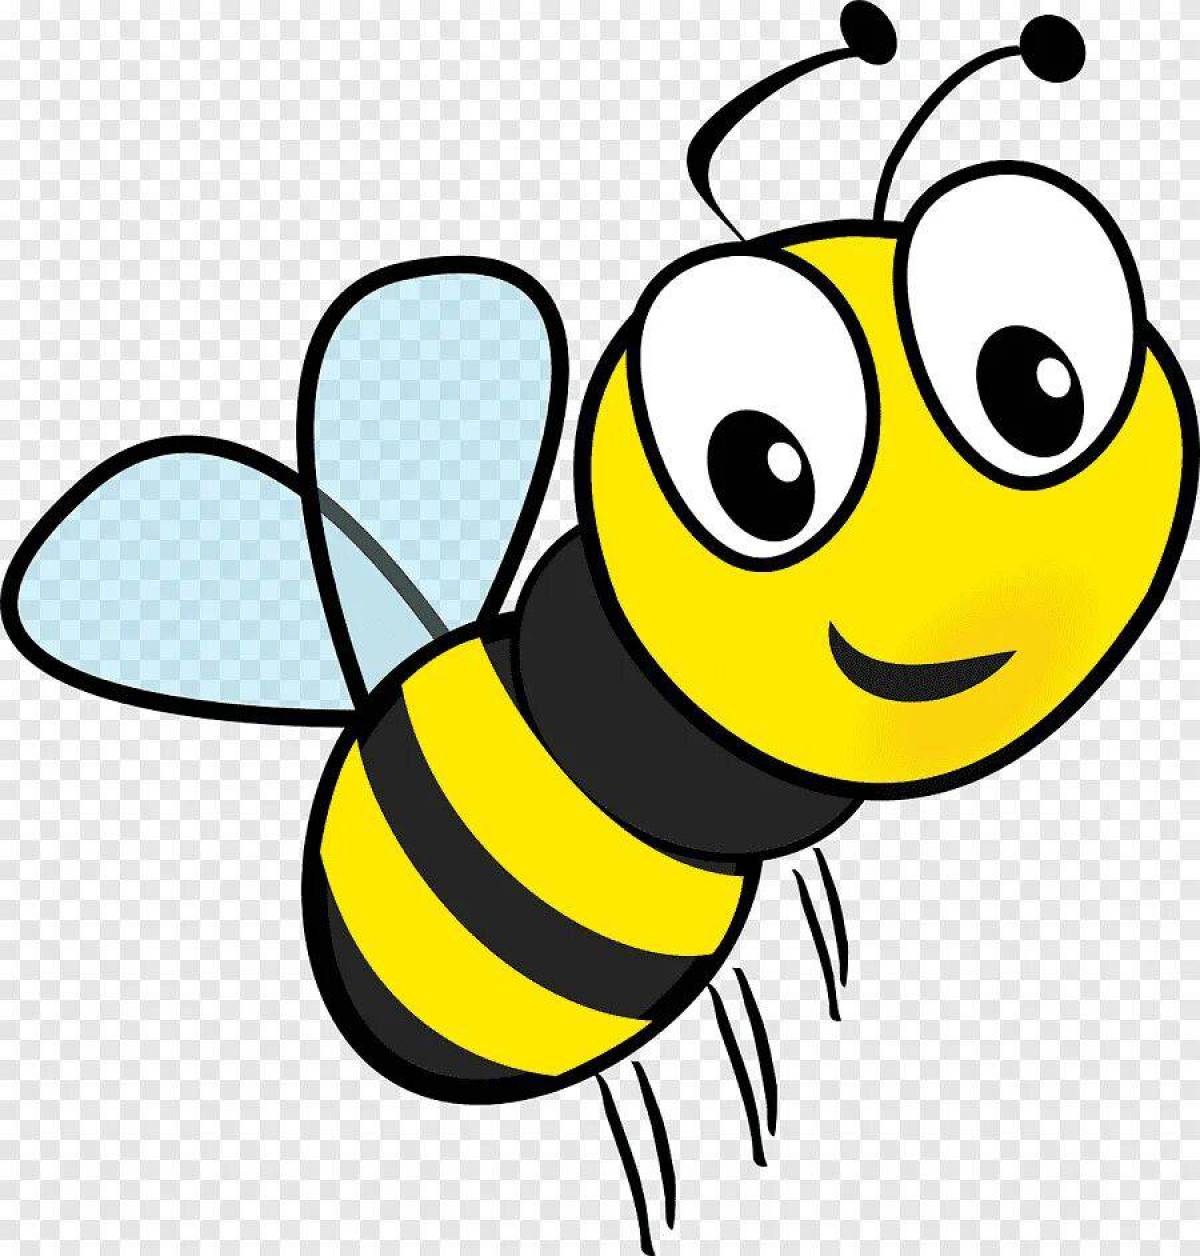 Пчела для детей #3